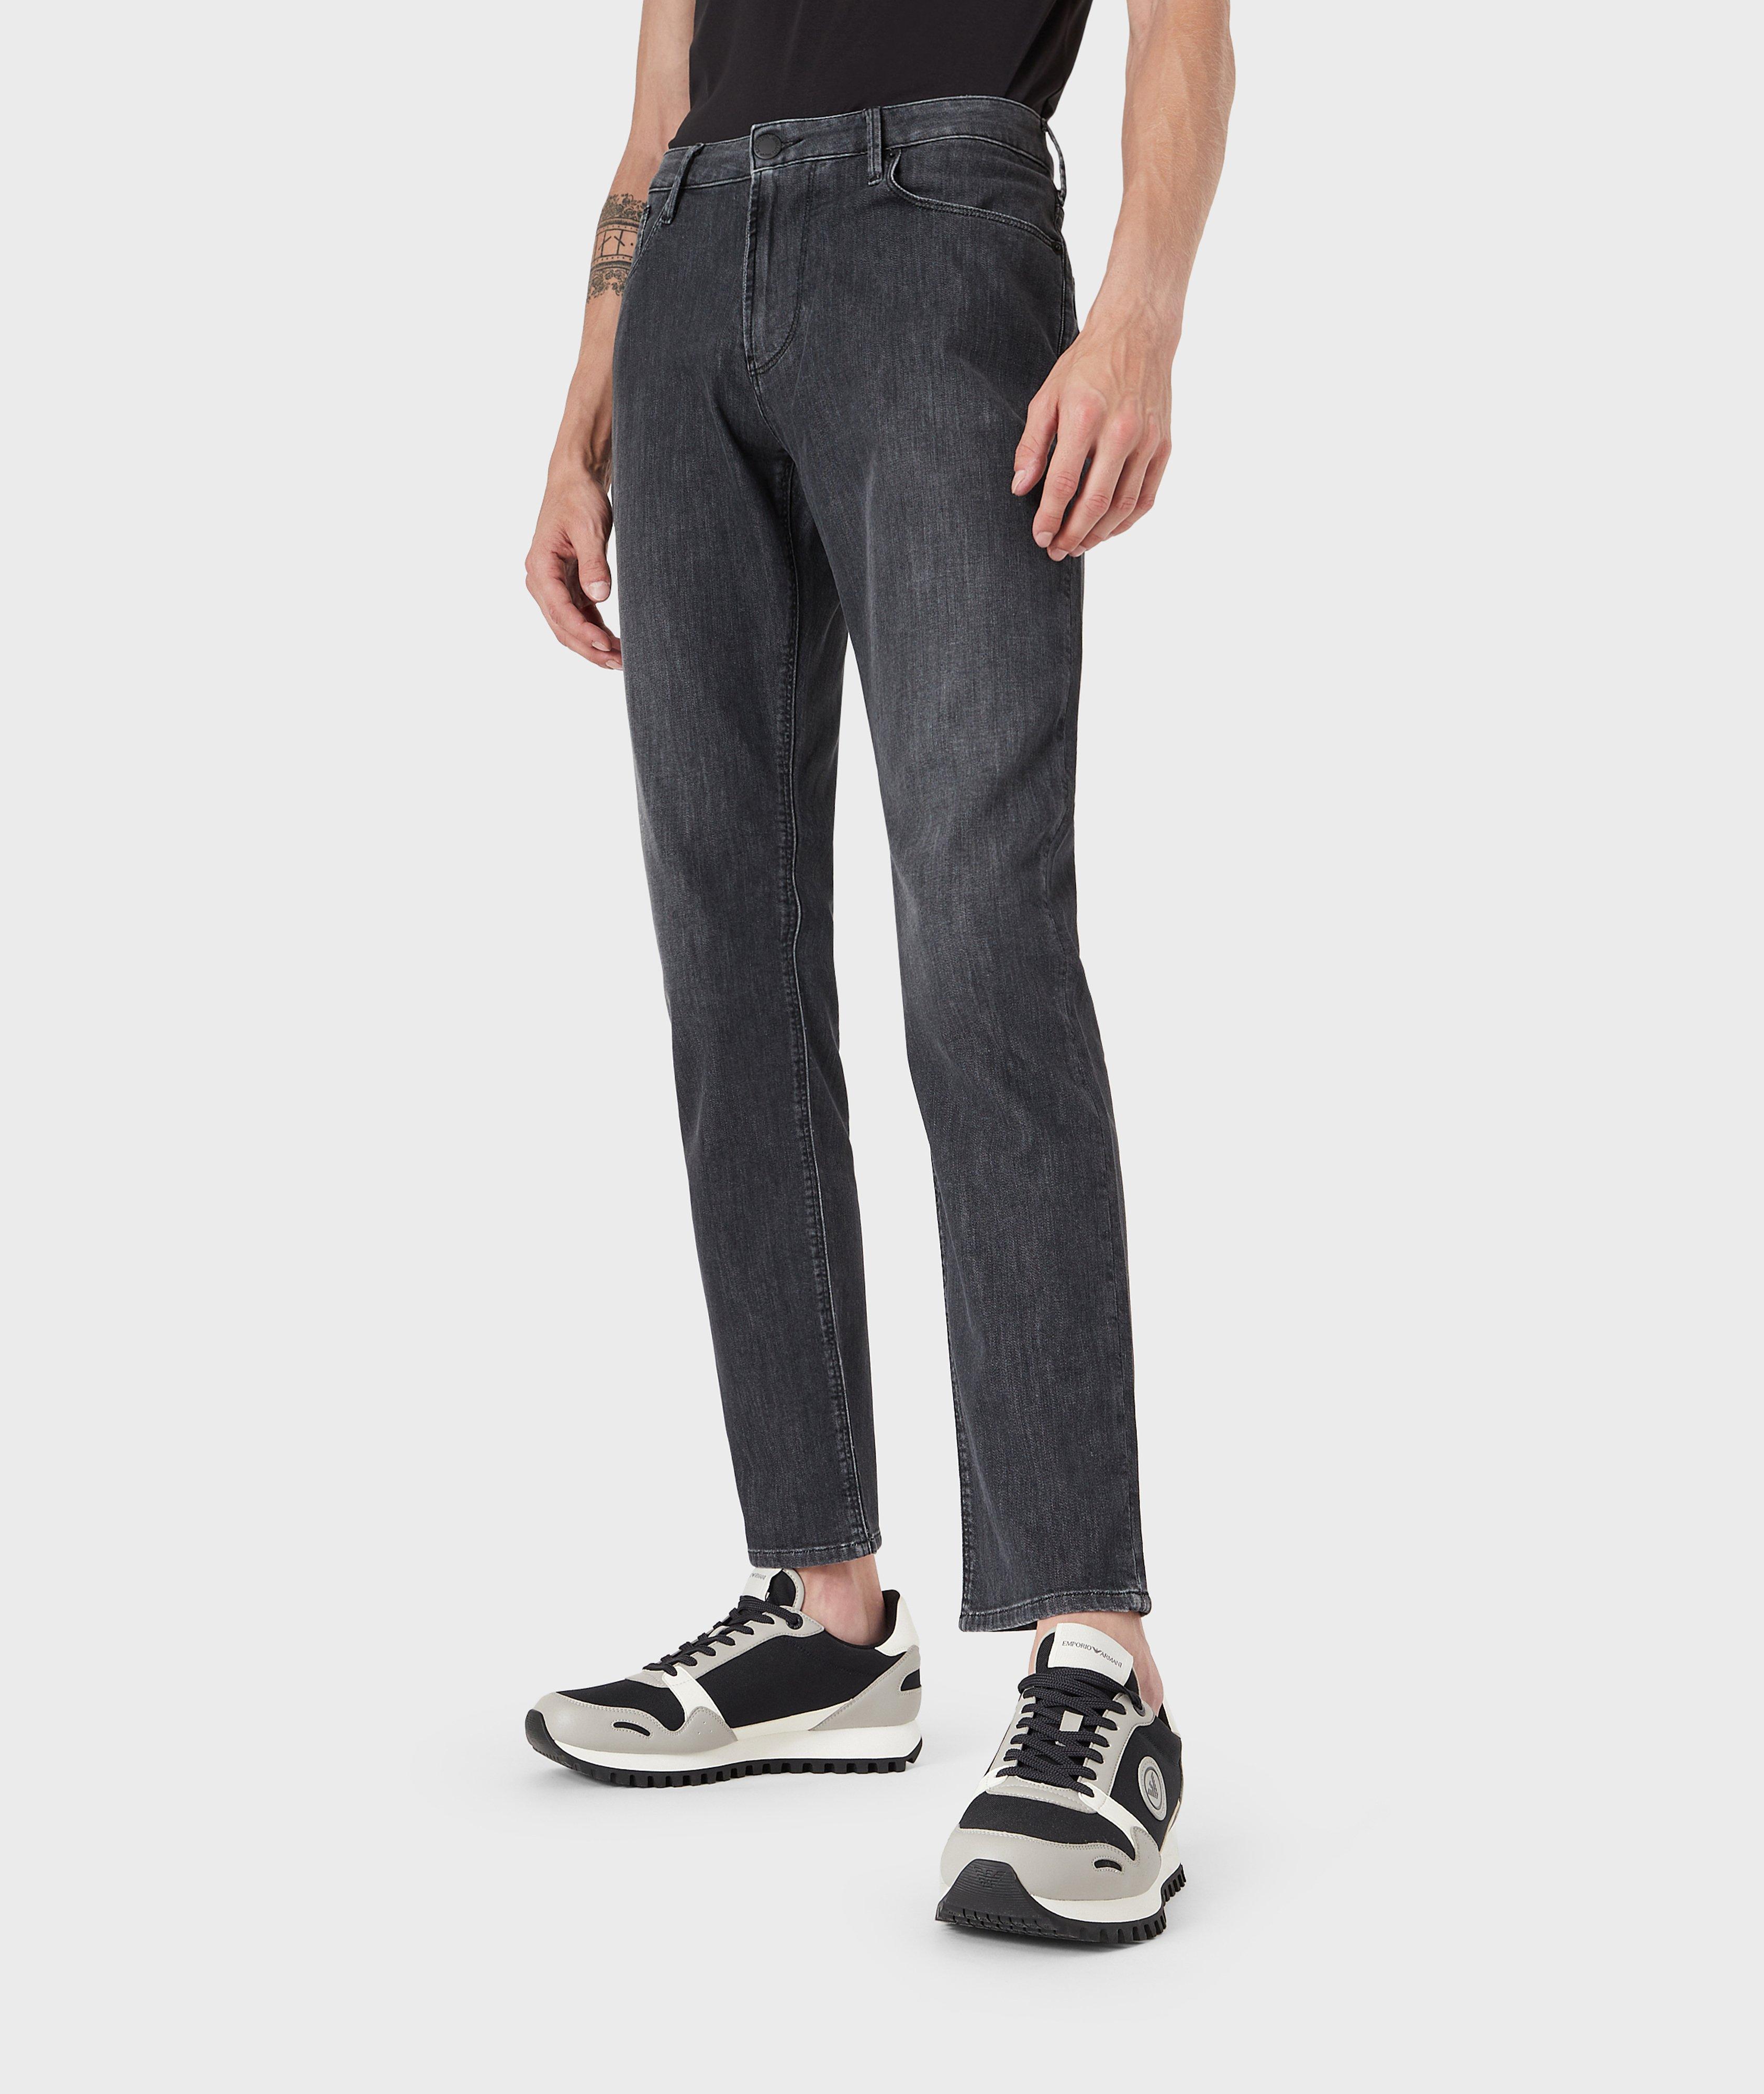 J06 Slim-Fit Cotton-Blend Jeans image 1